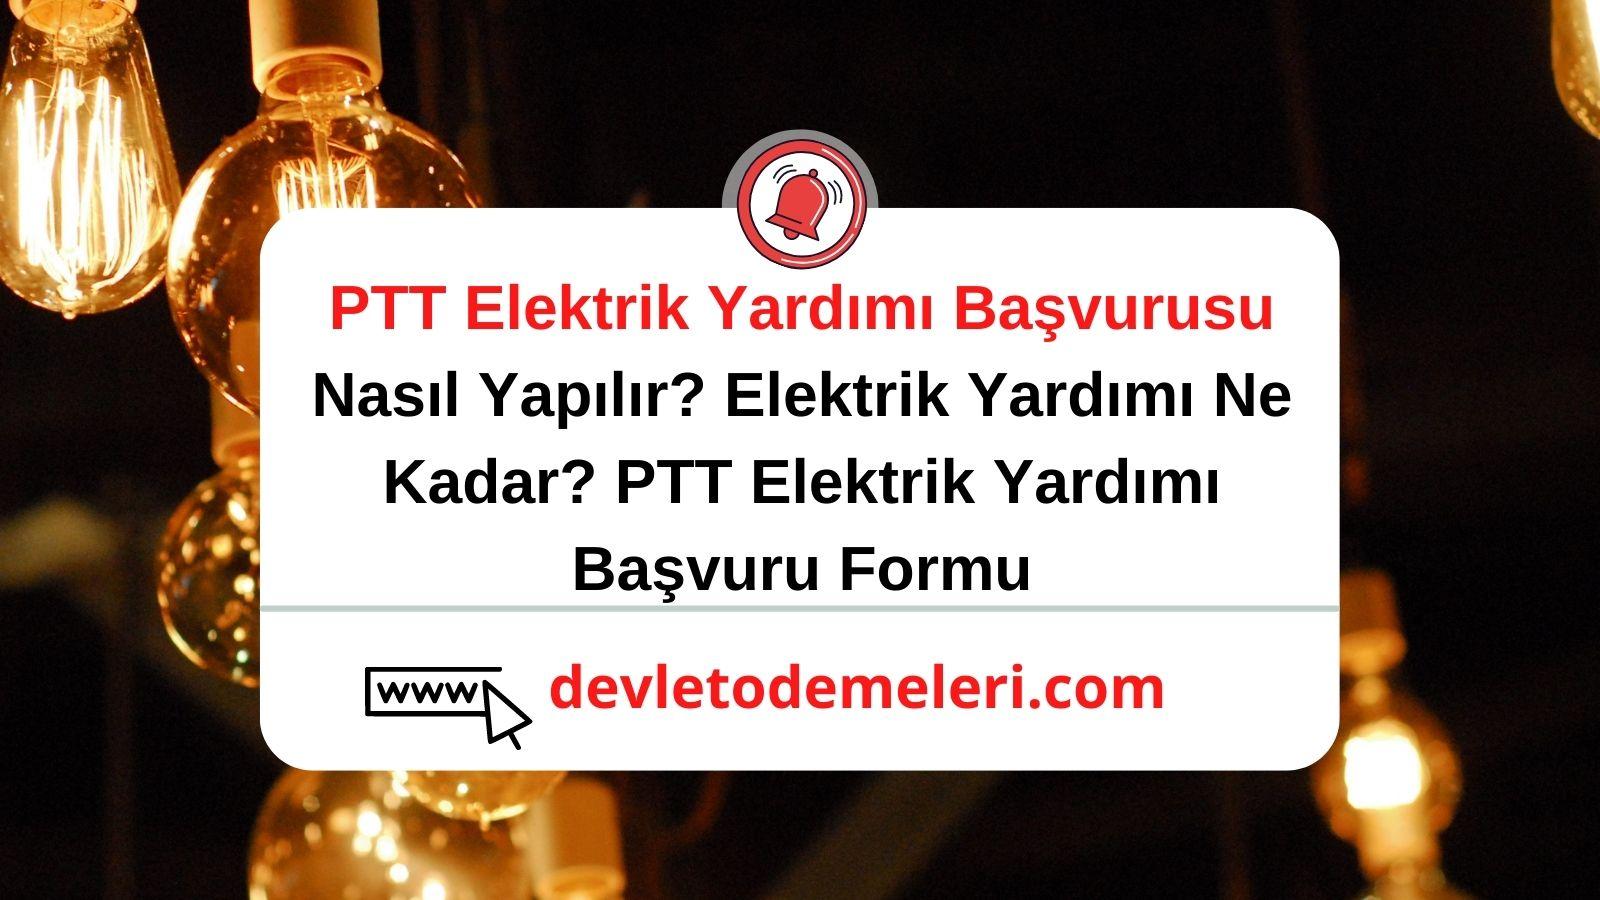 PTT Elektrik Yardımı Başvurusu